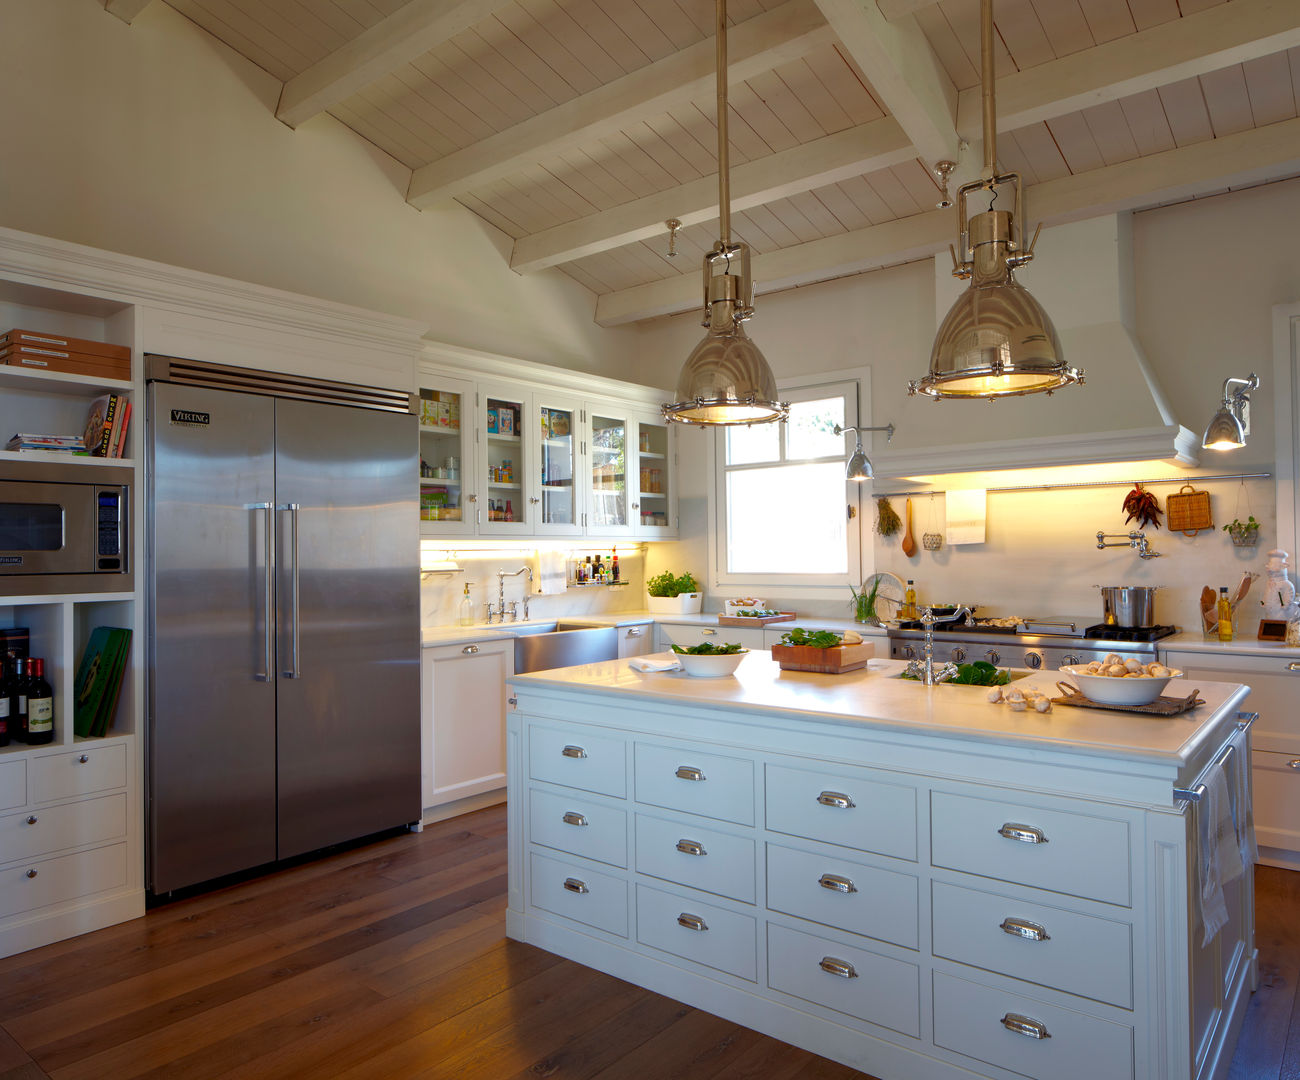 Cocina de estilo americano , DEULONDER arquitectura domestica DEULONDER arquitectura domestica Cocinas modernas